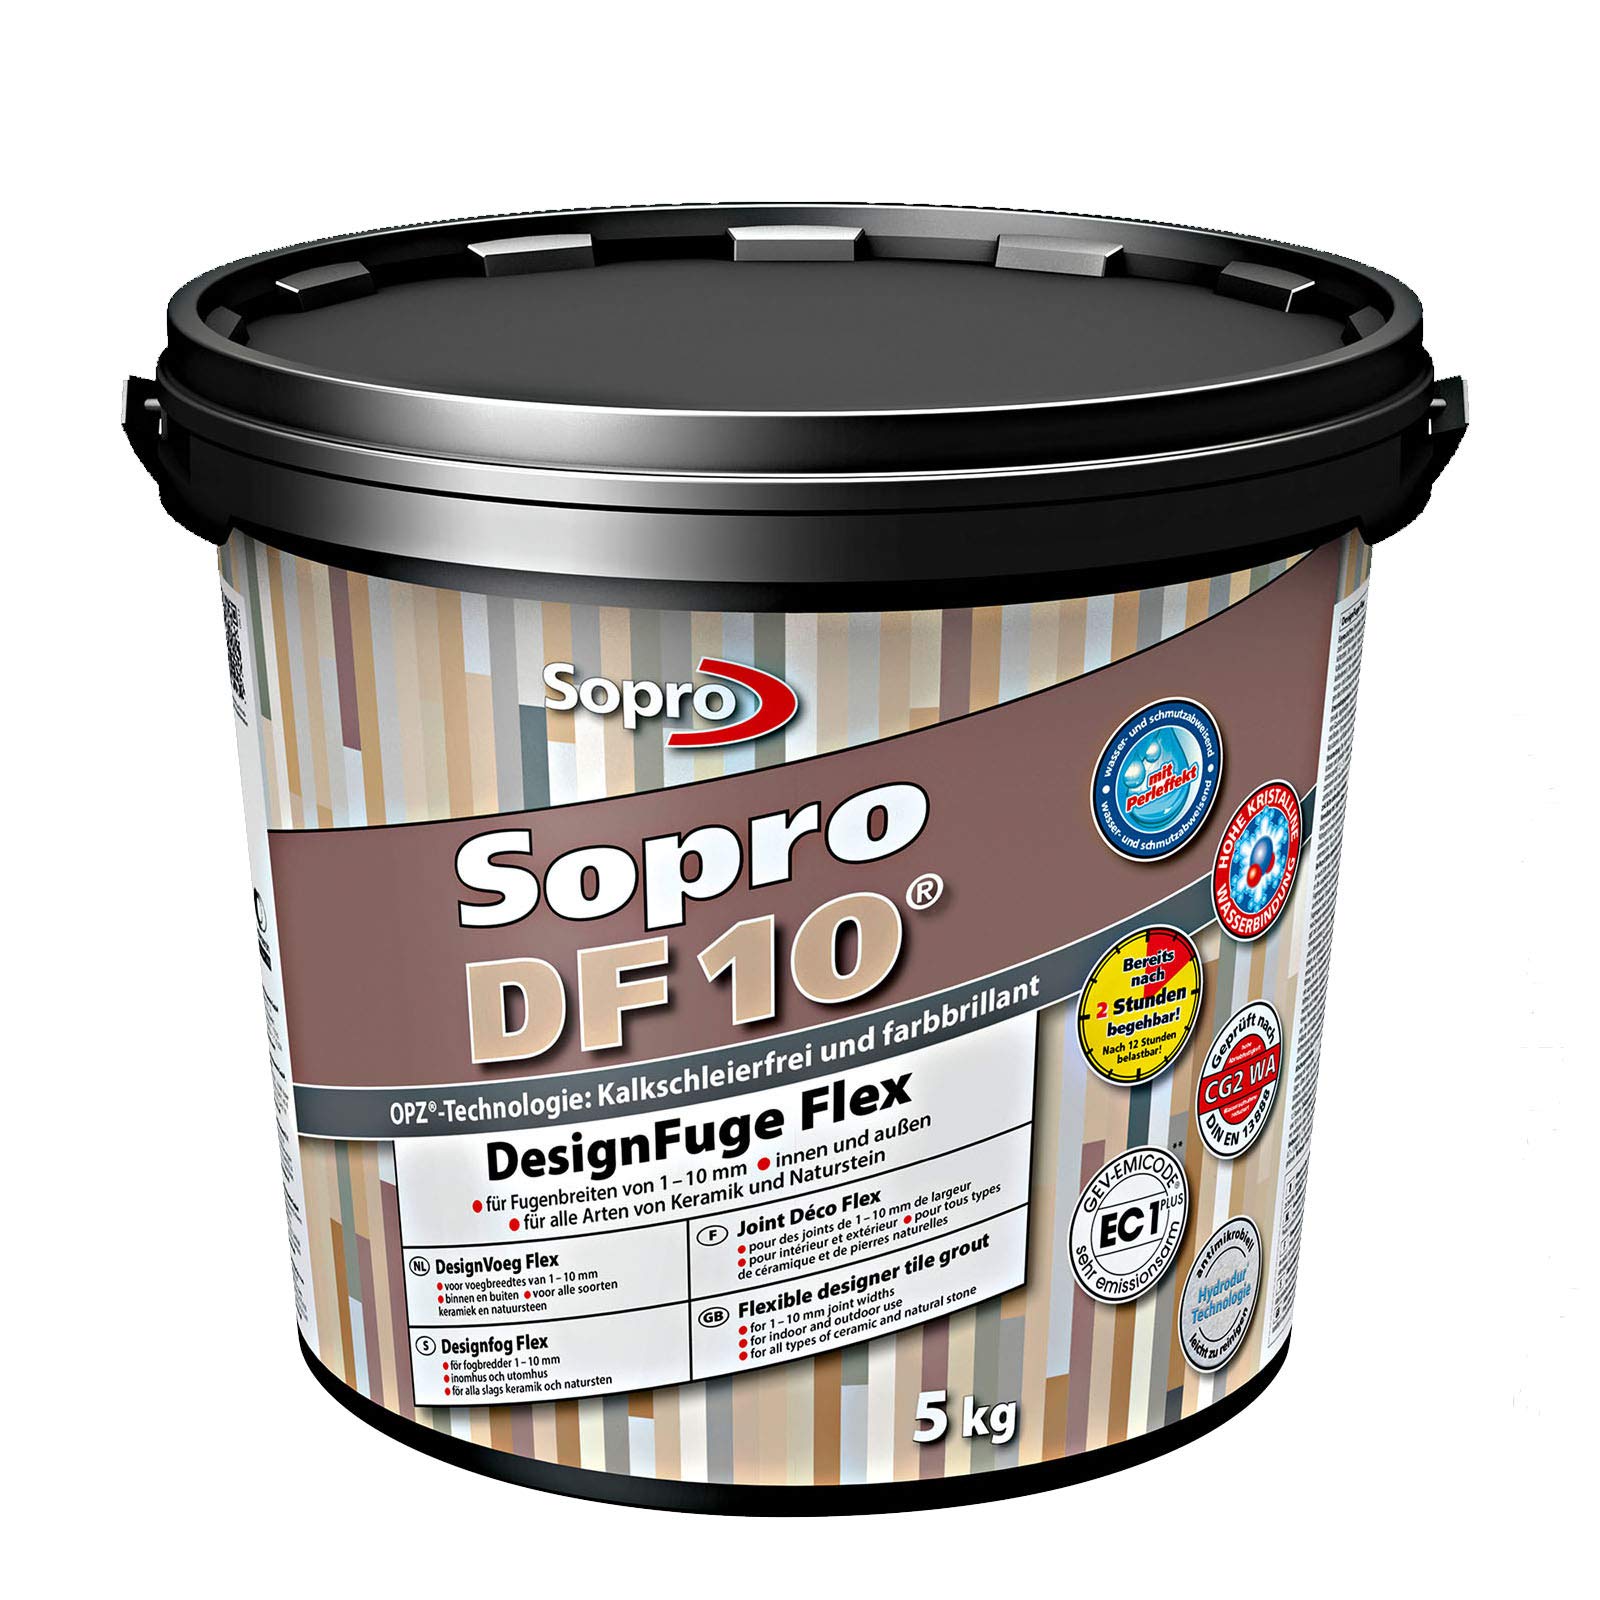 Sopro DF 10® DesignFuge Flex | silbergrau - zementärer, flexibler, schnell erhärtender und belastbarer Fugenmörtel | silbergrau (5 kg)